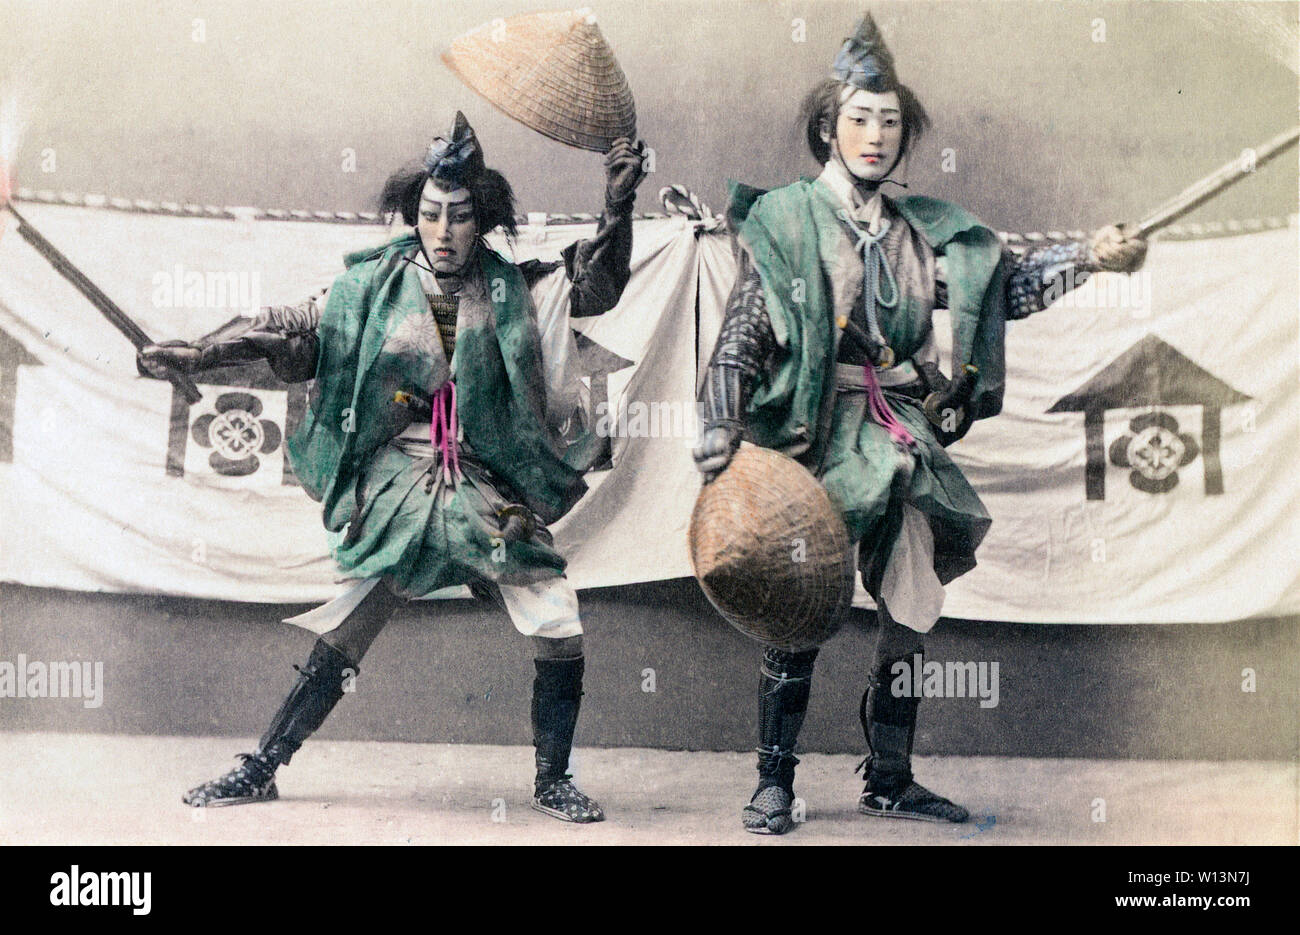 [ 1890 - Japon ] acteurs Japonais - deux comédiens interprétant. 19e siècle vintage albumen photo. Banque D'Images